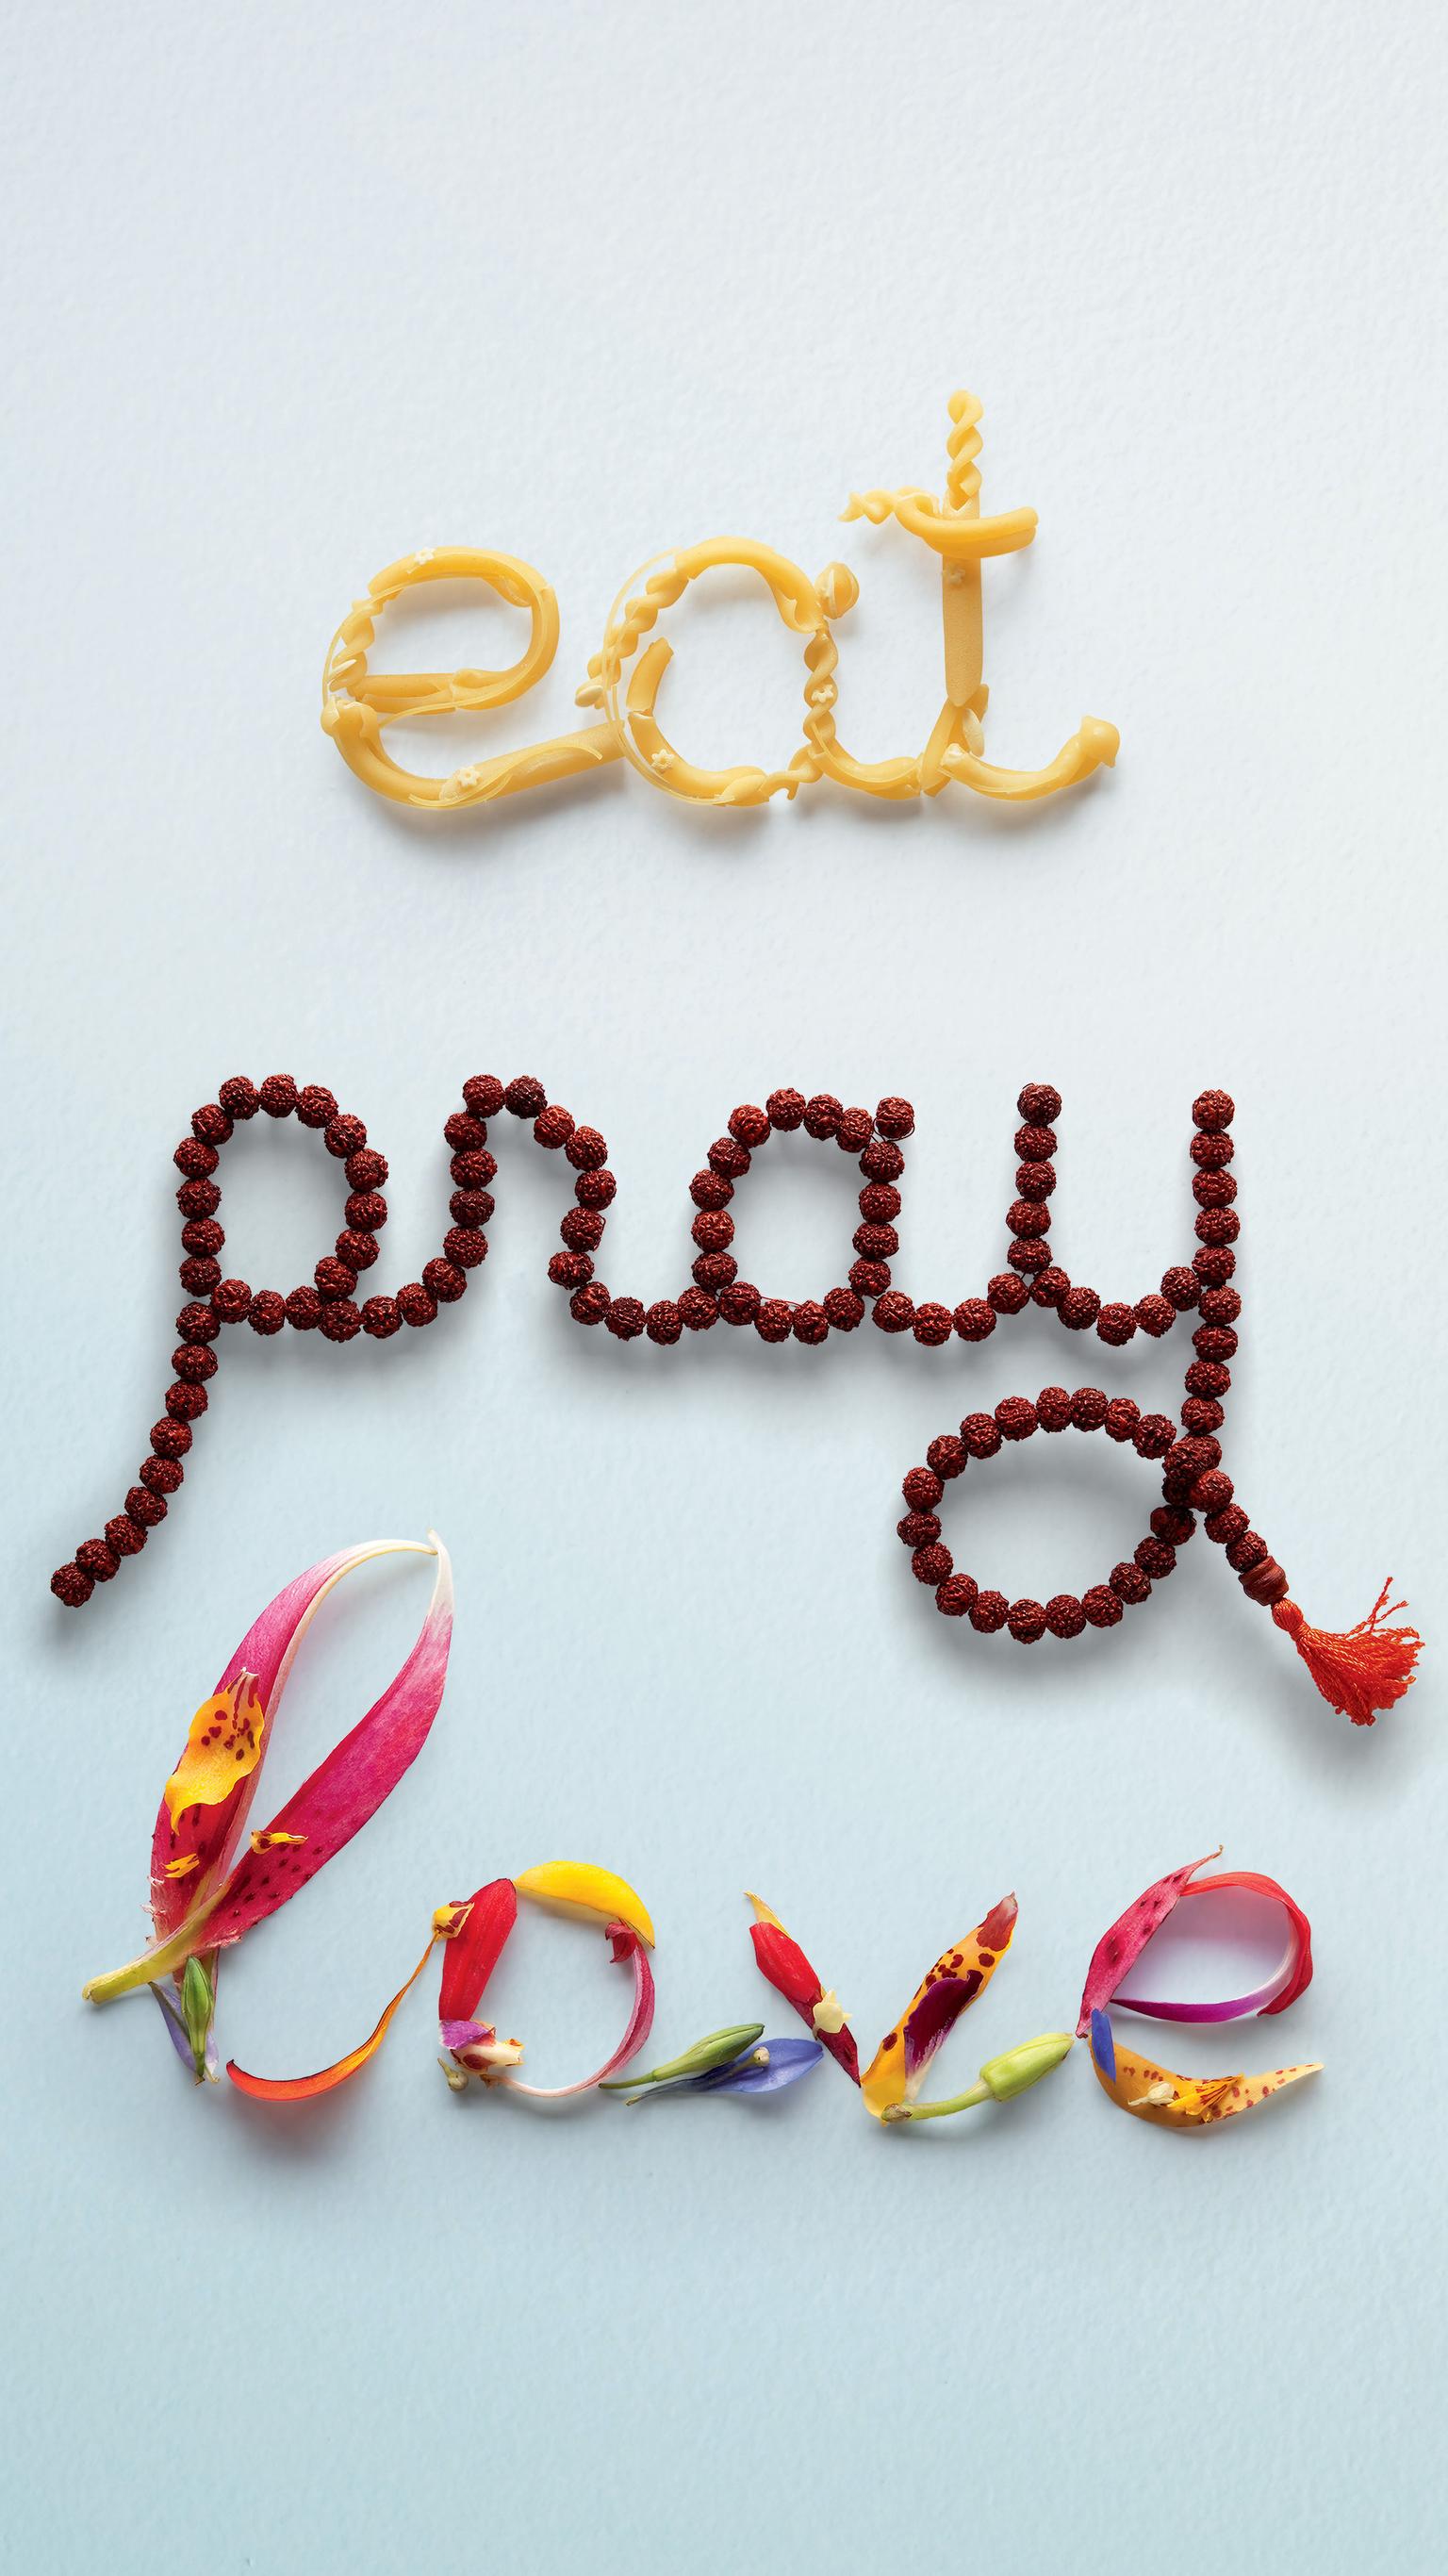 Eat Pray Love (2010) Phone Wallpaper